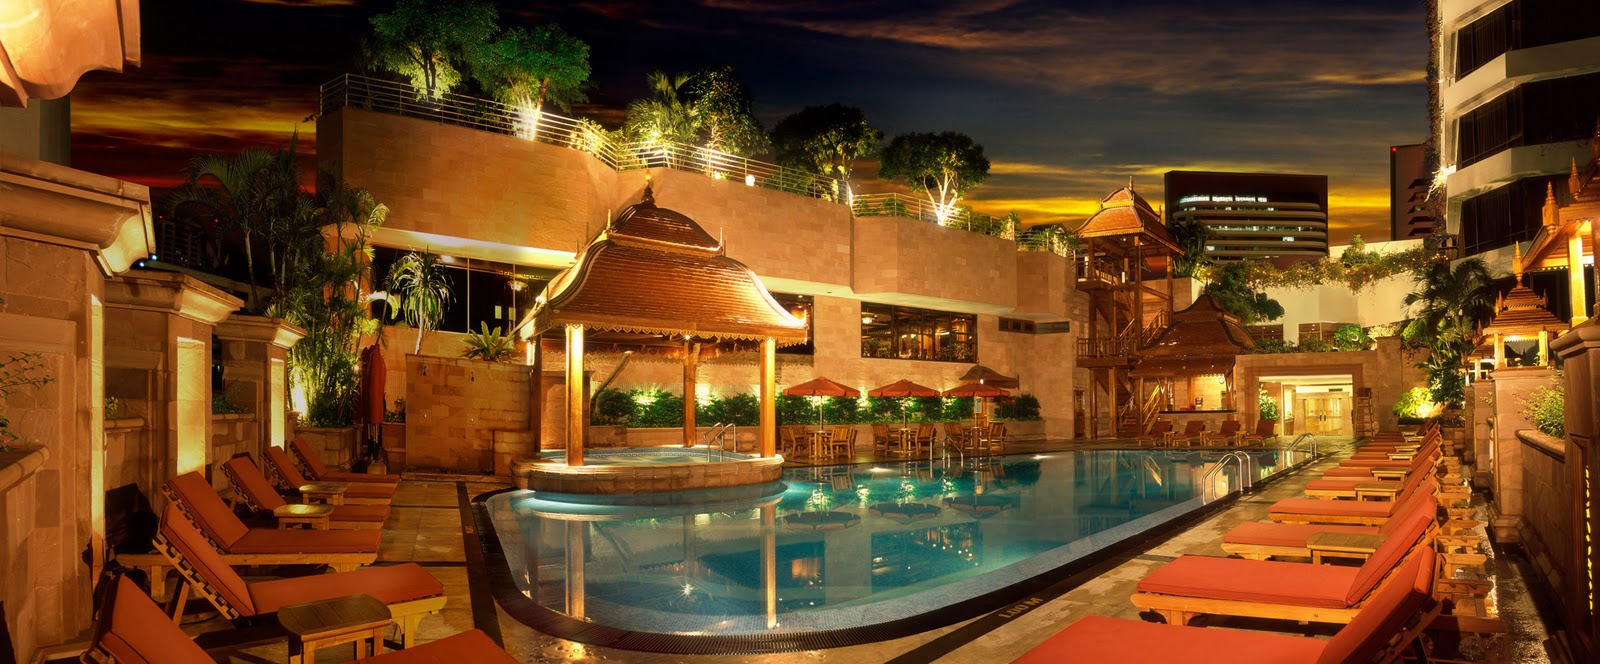 Bangkok hotels